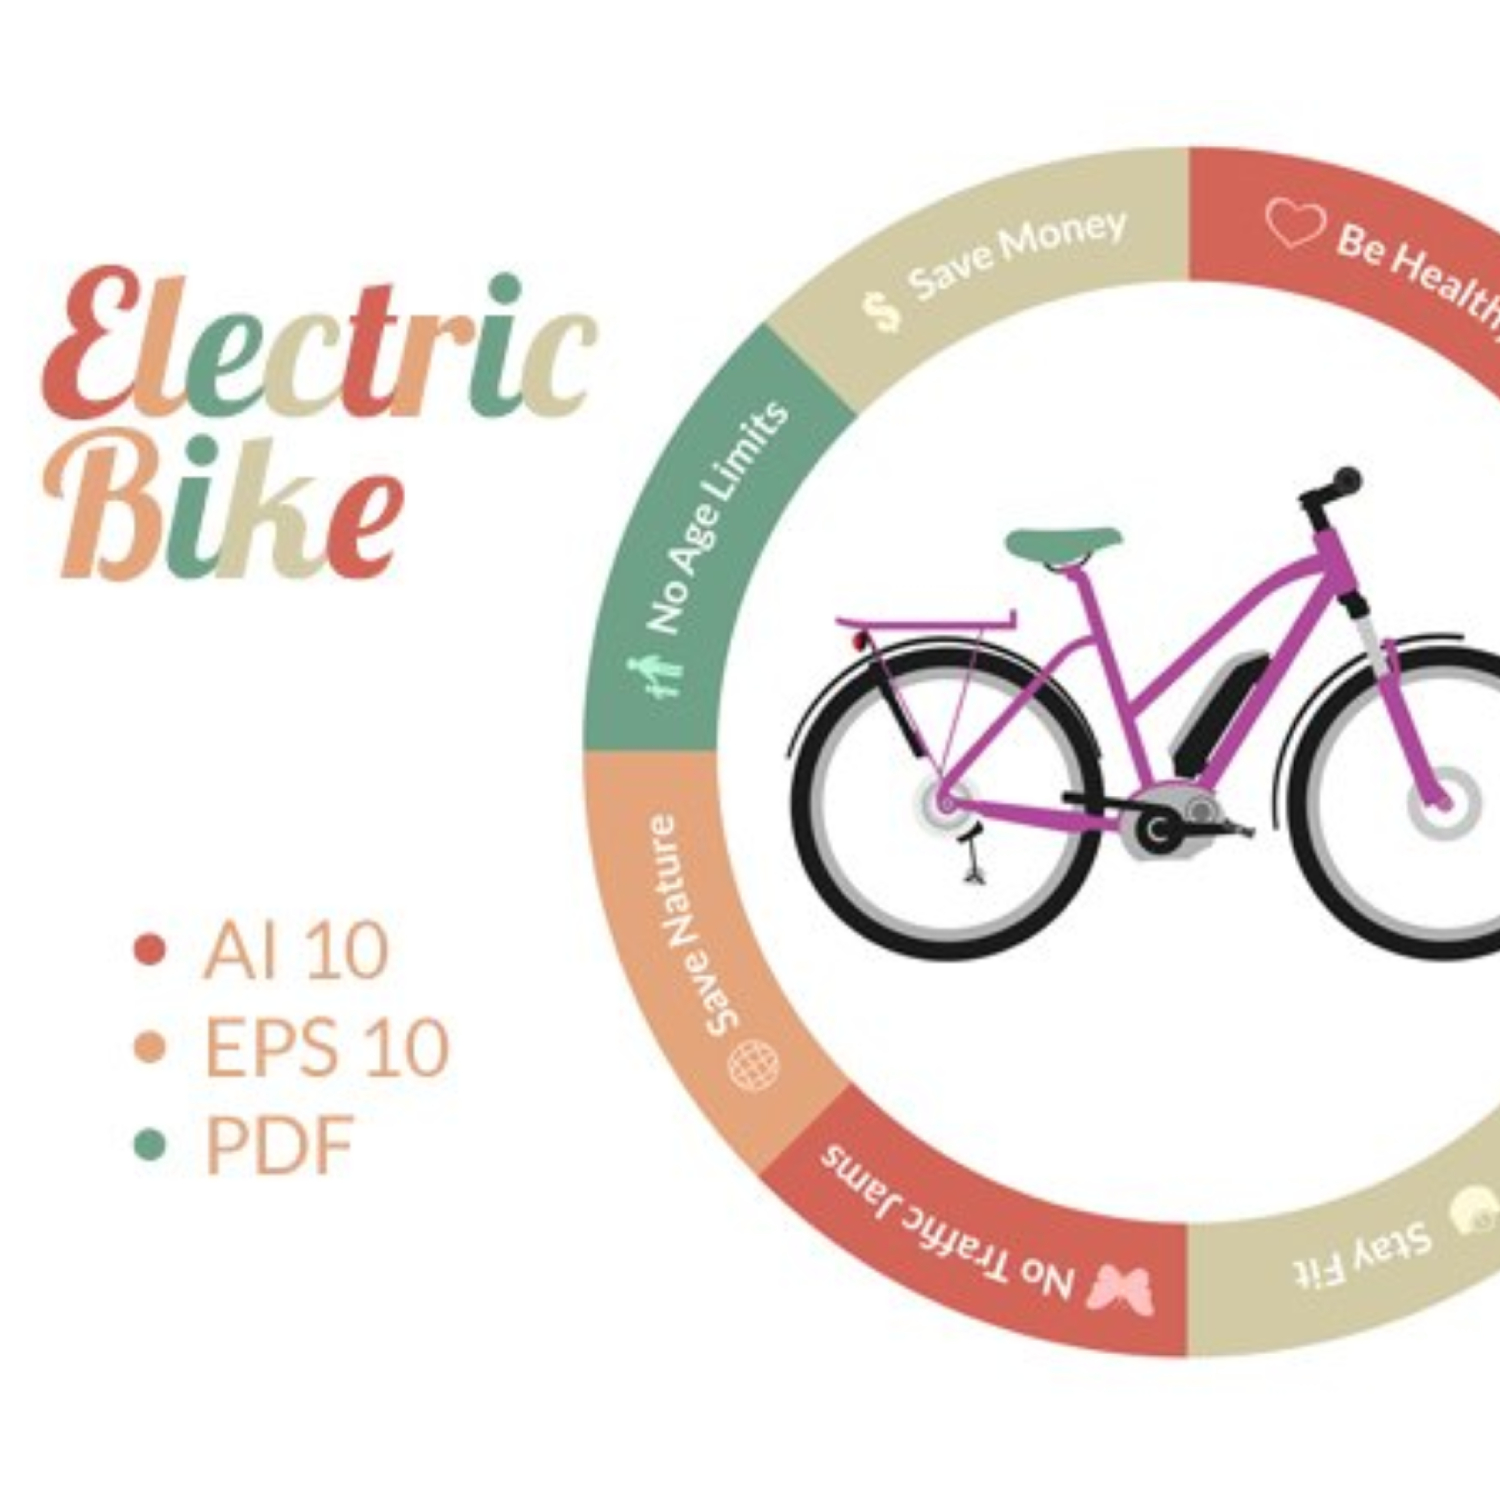 Electric Bike.